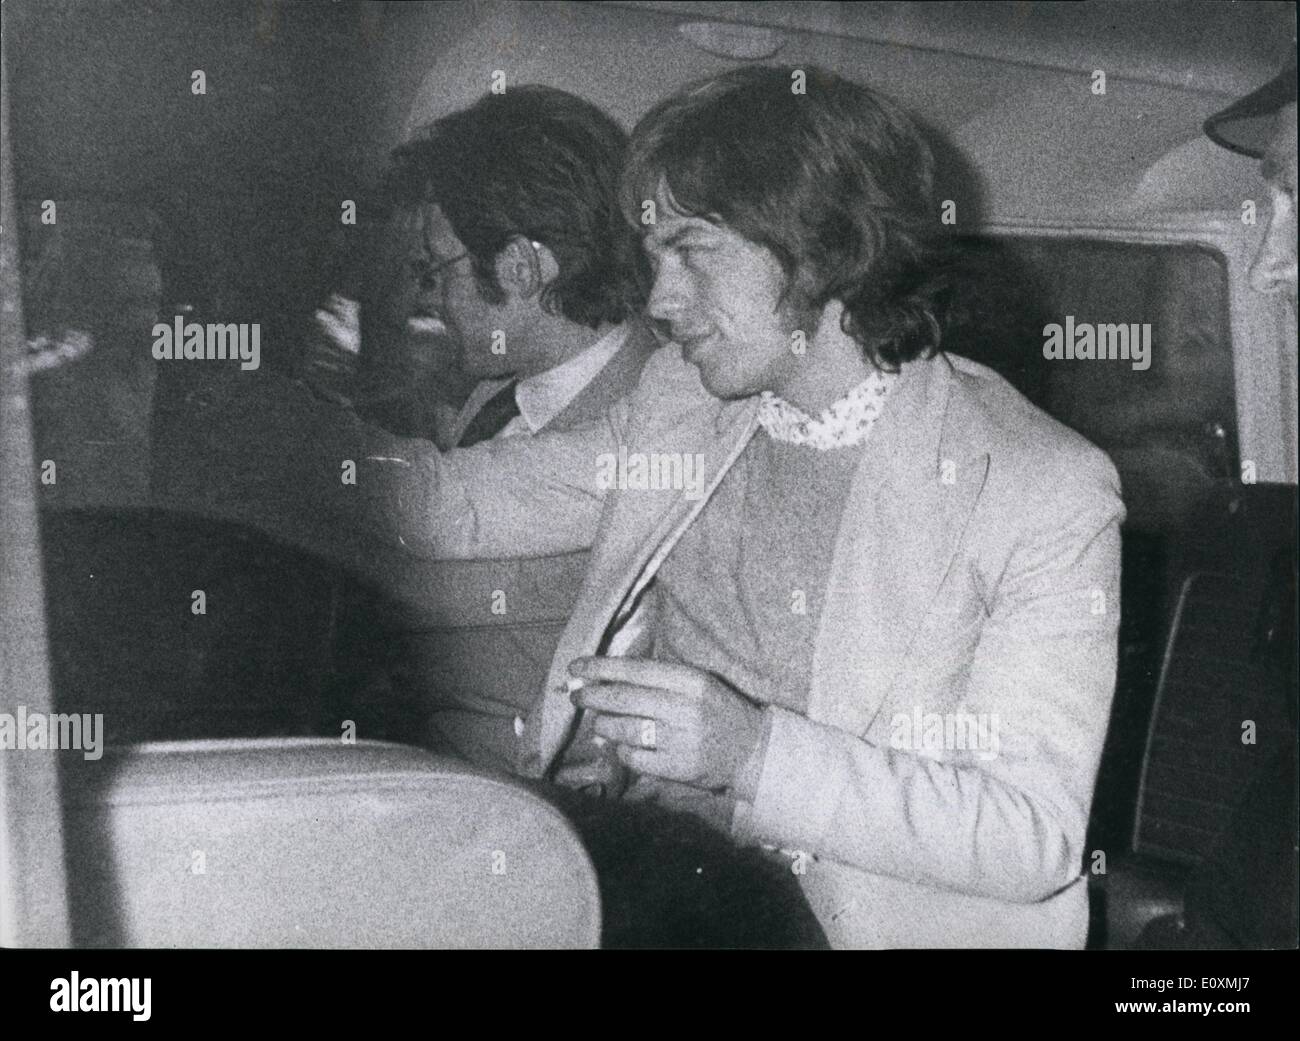 6. Juni 1967 - Mick Jagger und Keith Richard von den Rolling Stones erhalten Haftstrafen verurteilt: Die £ 1 Million kam eine Jahr Karriere der Rolling Stones zum vorübergehenden Stillstand bei Chichester gestern, wenn eine Jury aus 11 Männer und eine Frau gefunden Keith Richard, führende Gitarrist, schönem seines Bauernhauses, Redlands, West Wittering, Sussex, verwendet werden, für das Räuchern von indischem Hanf schuldig war. Mick Jagger, der Lead-Sänger, wurde eine Straftat, die mit Drogen schuldig. Richard wurde geschickt, um für ein Jahr und Jagger für drei Monate ins Gefängnis Stockfoto